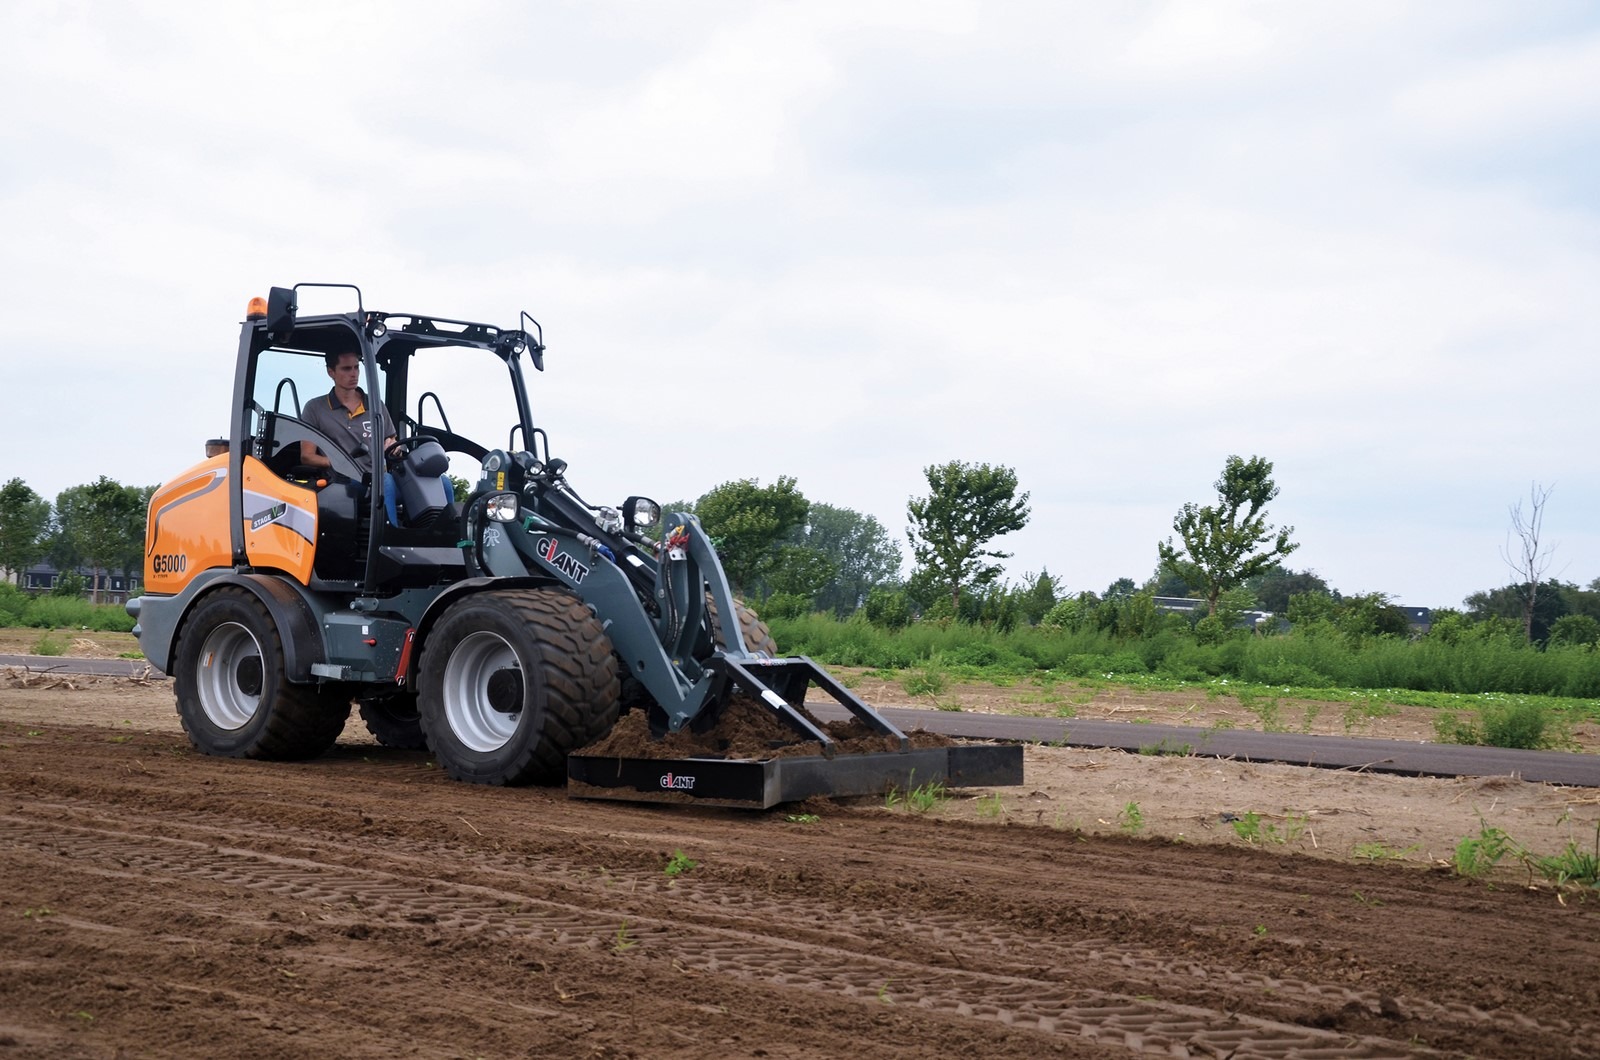 Ouvrier qui conduit la CHARGEUSE GIANT G5000 X-TRA avec son accessoire pour travailler la terre dans un champ